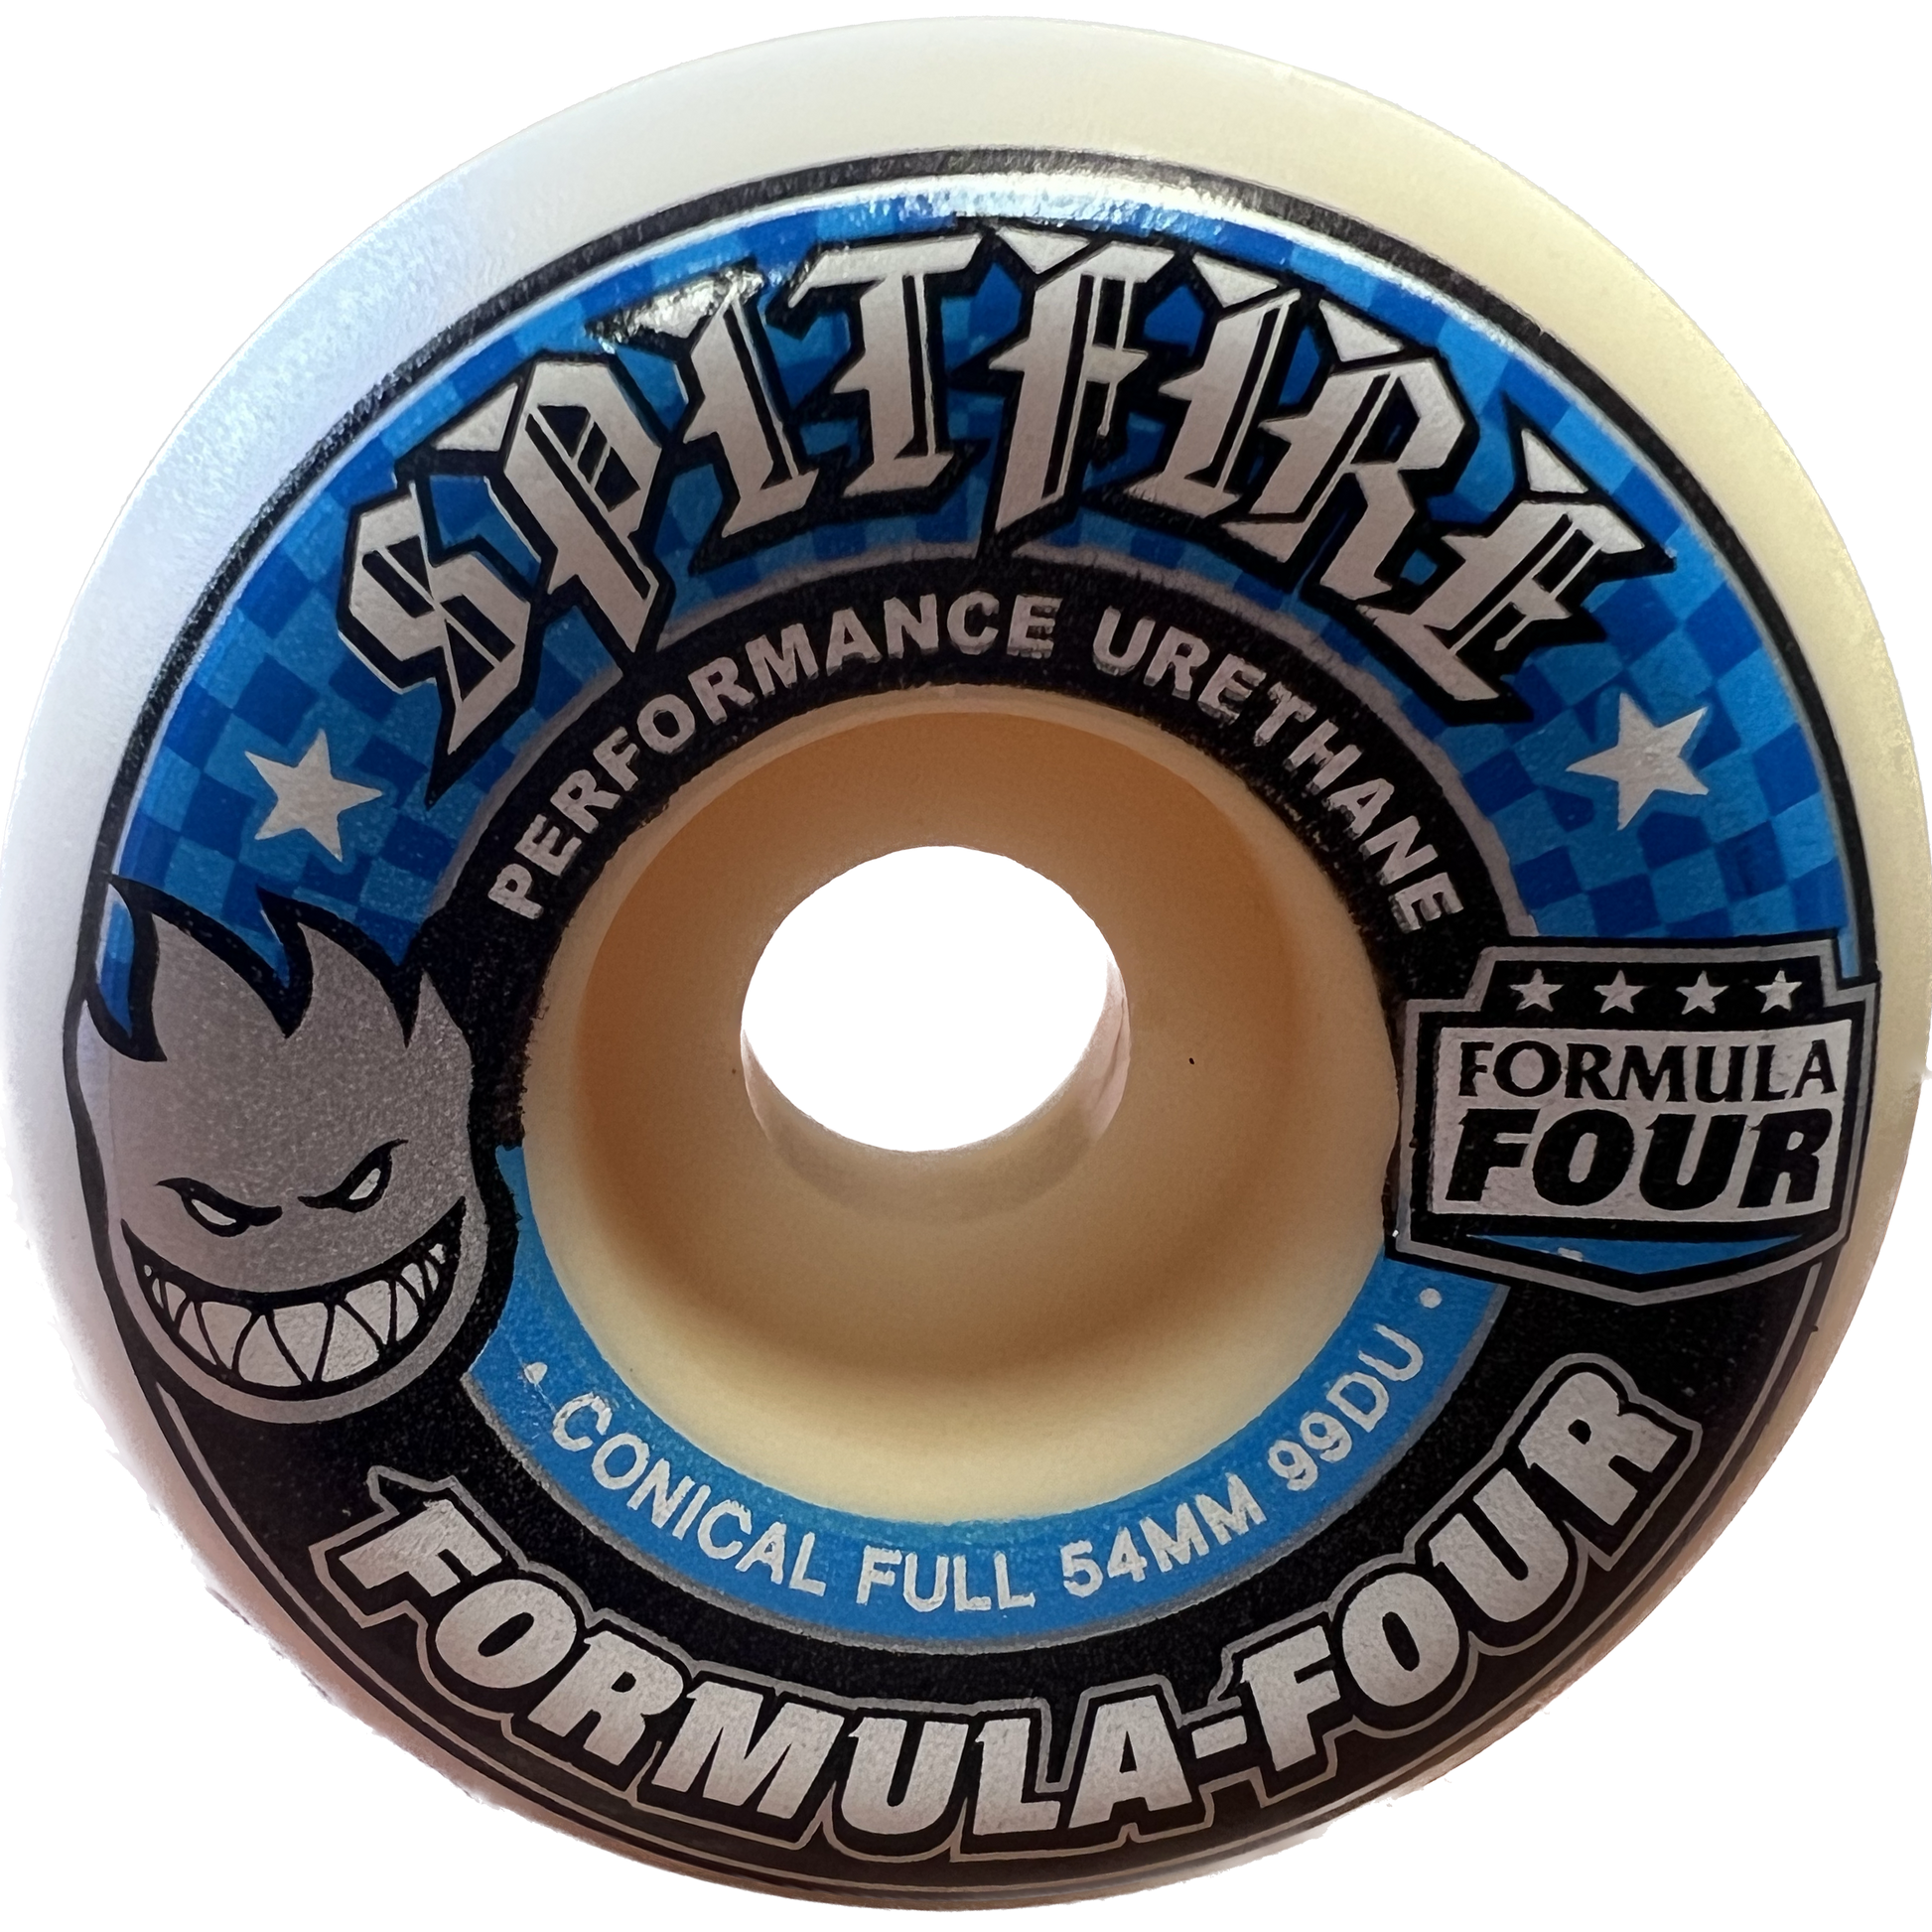 Spitfire Formula Four Conical Full 54mm 99d Set Of 4 Skateboard Wheels